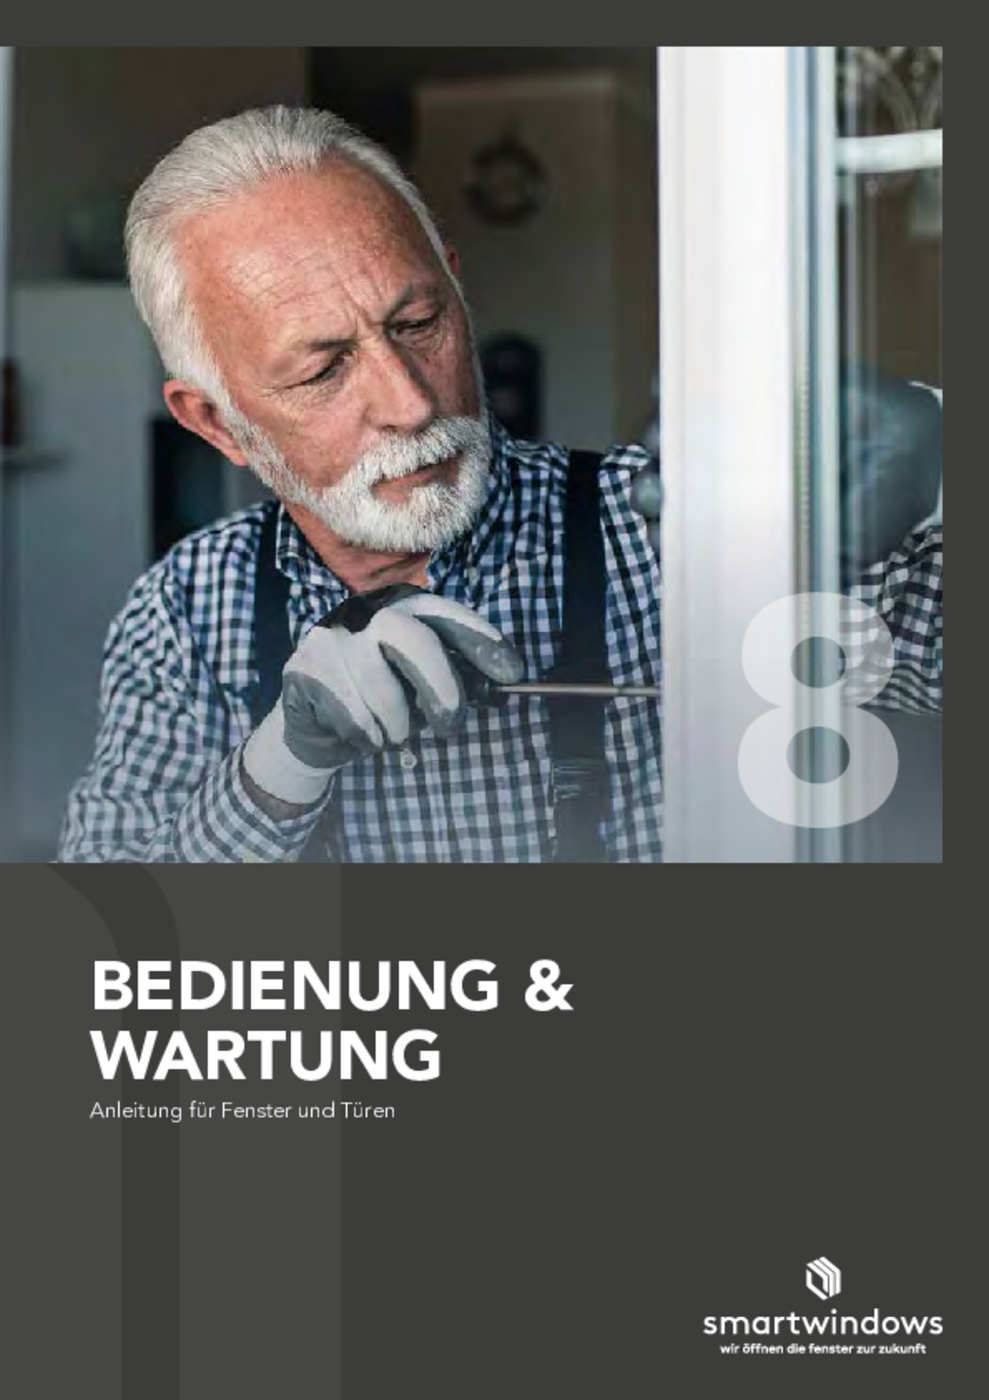 08_Bedienung-Wartung_DE_122020_ES_web.pdf